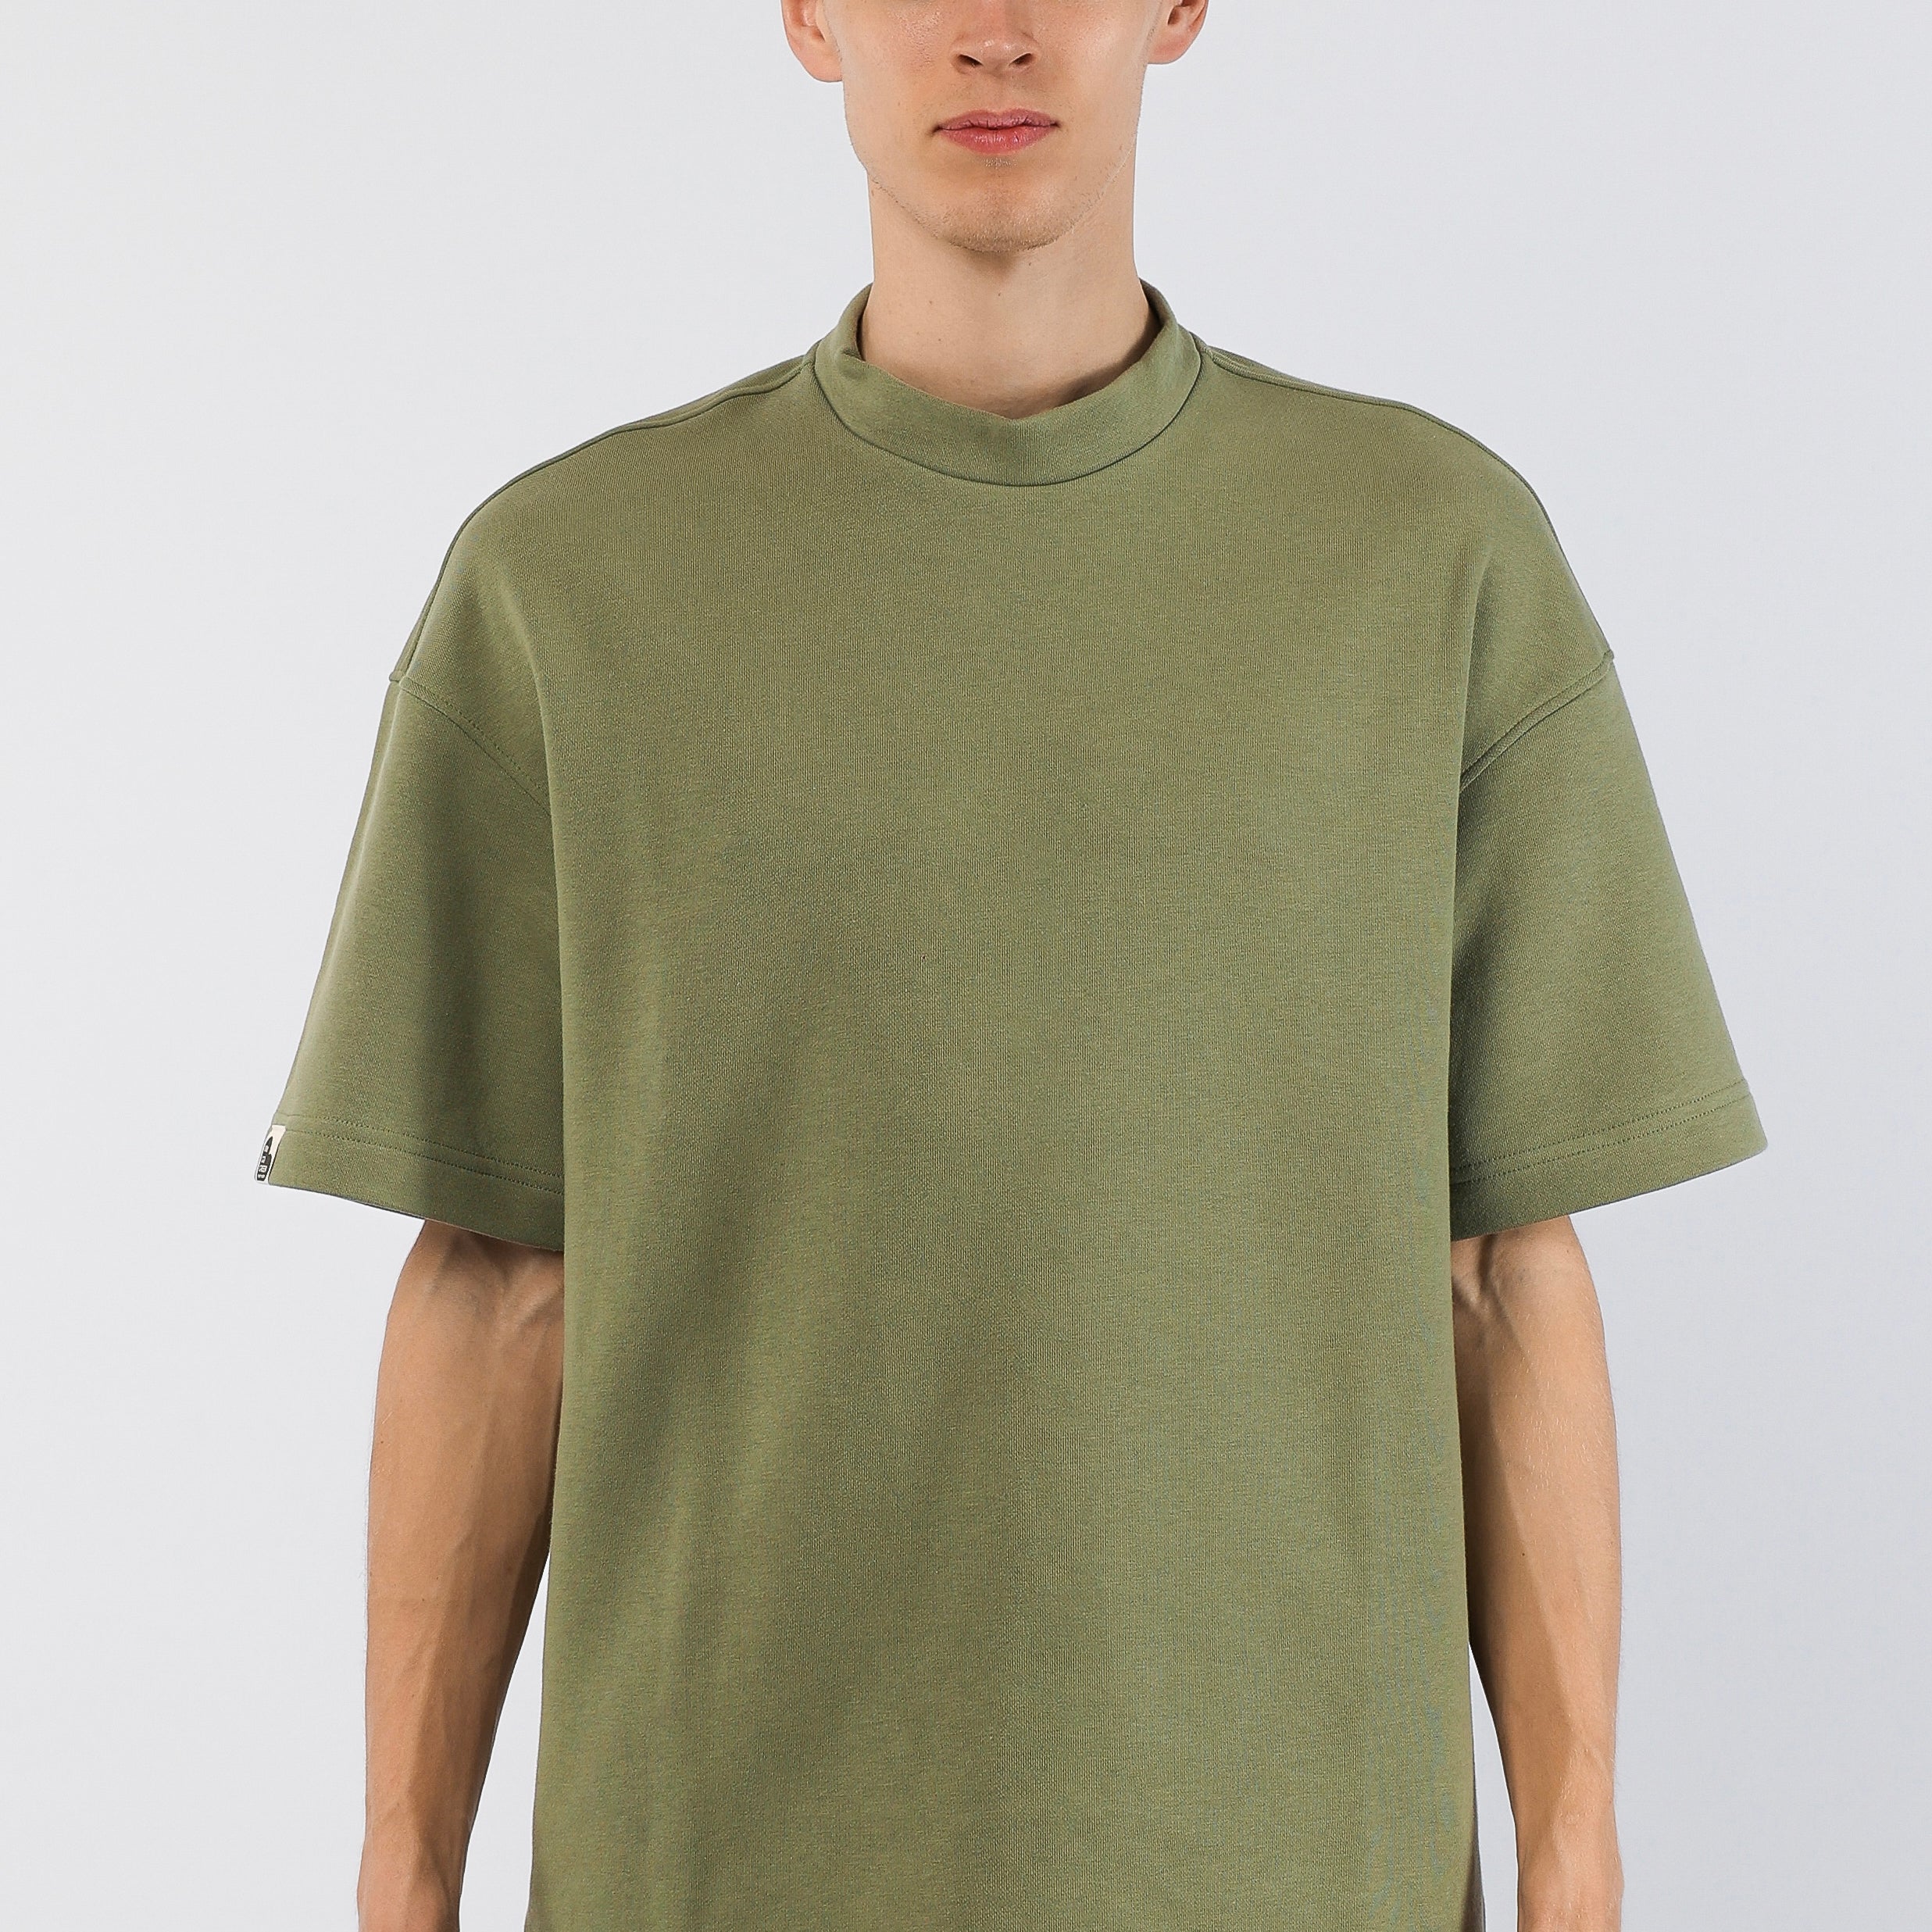 Short-sleeved organic cotton jumper